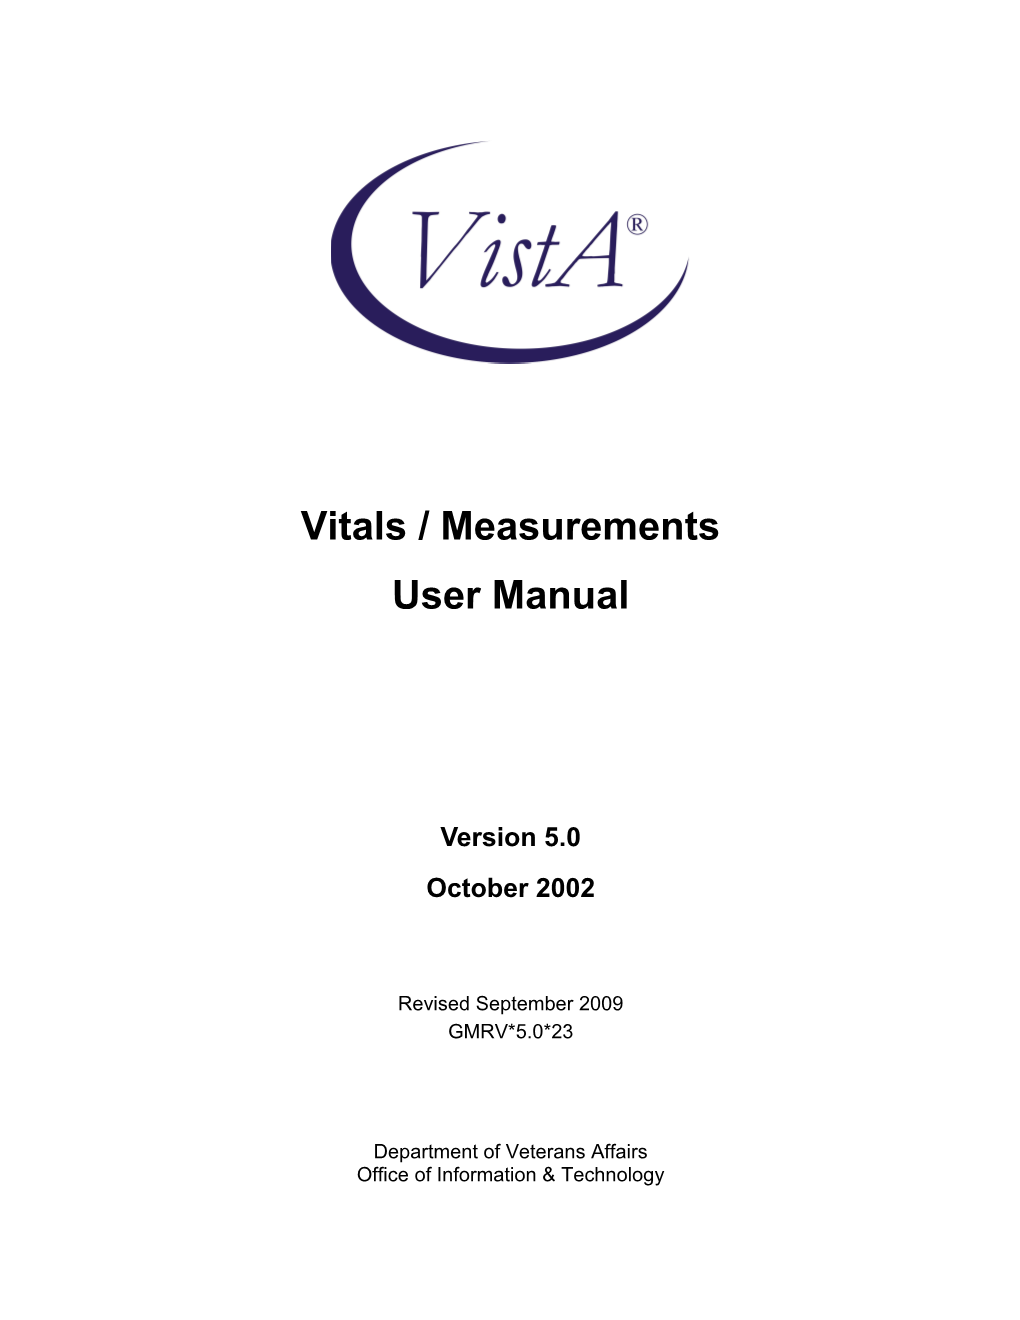 Vitals 5.0 User Manual